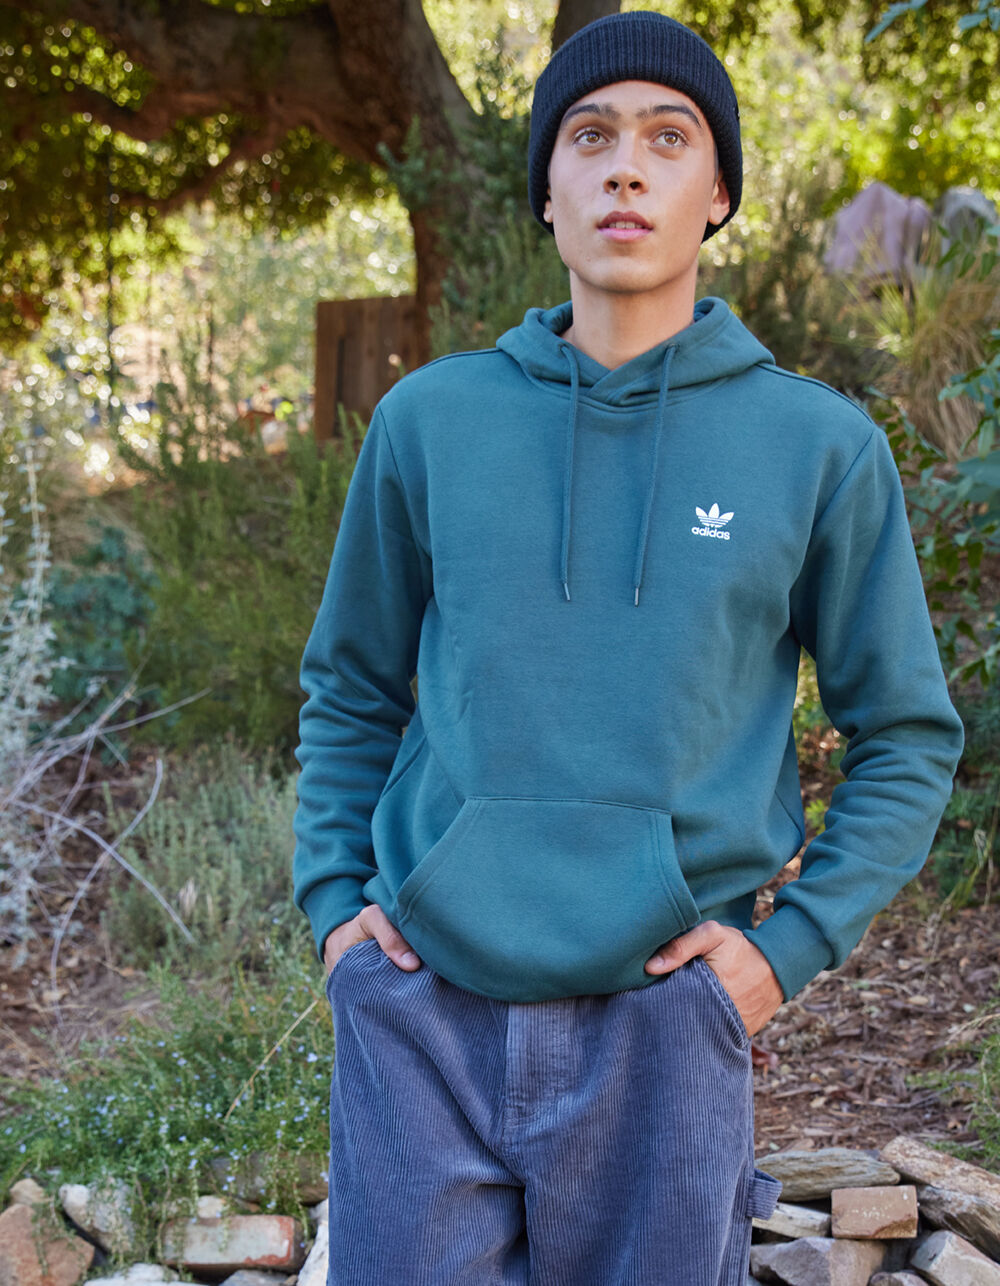 adidas Originals essentials hoodie in dark green